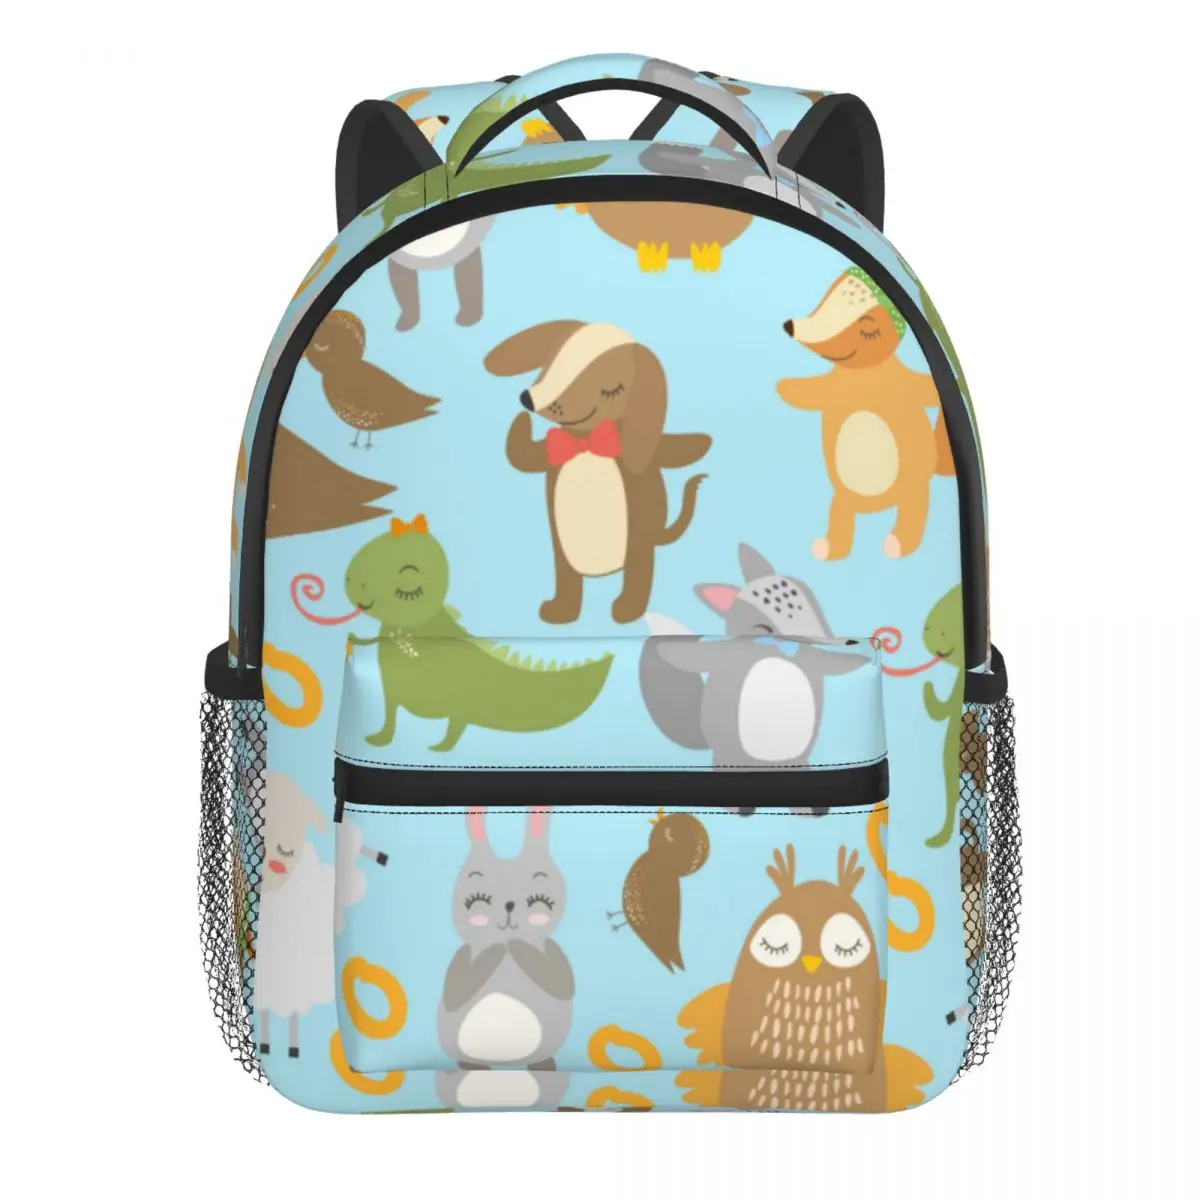 Cute Birds Forest Animals Baby Backpack Kindergarten Schoolbag Kids Children School Bag